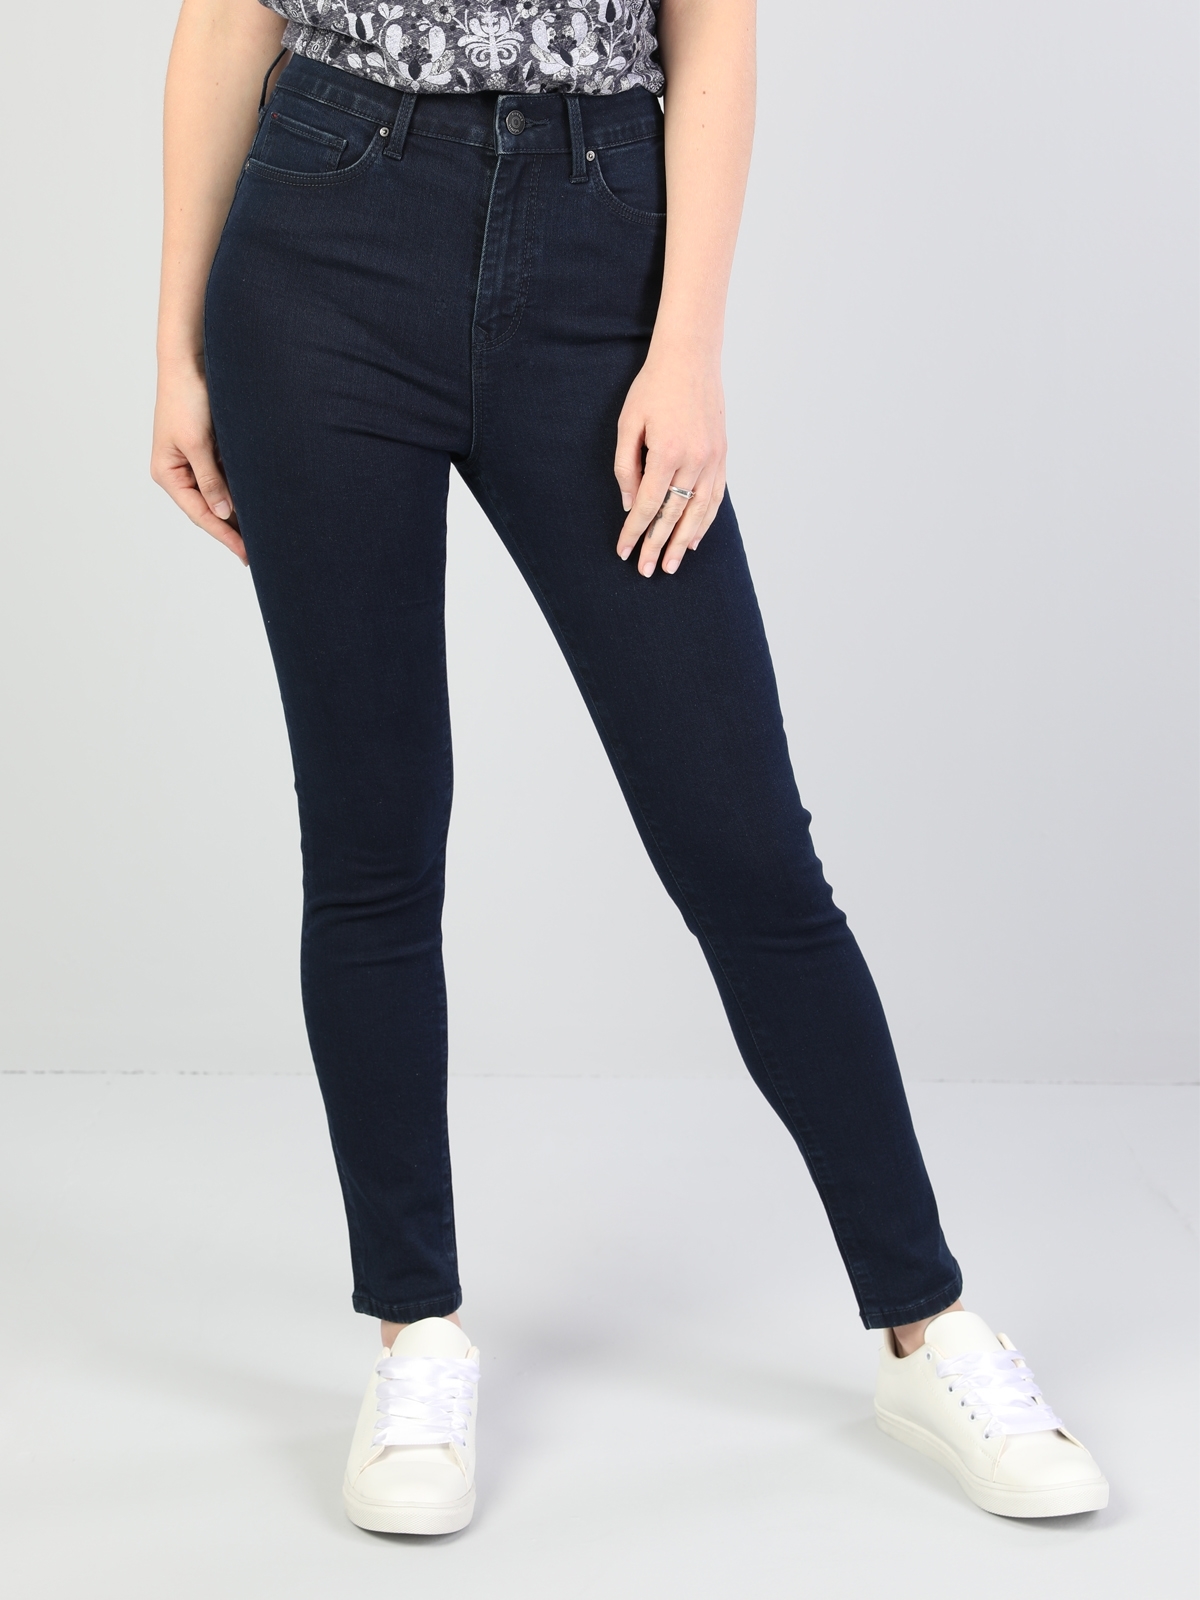 Colins 760 Dıana Yüksek Bel Dar Paça Super Slim Fit Mavi Kadın Jean Pantolon. 5